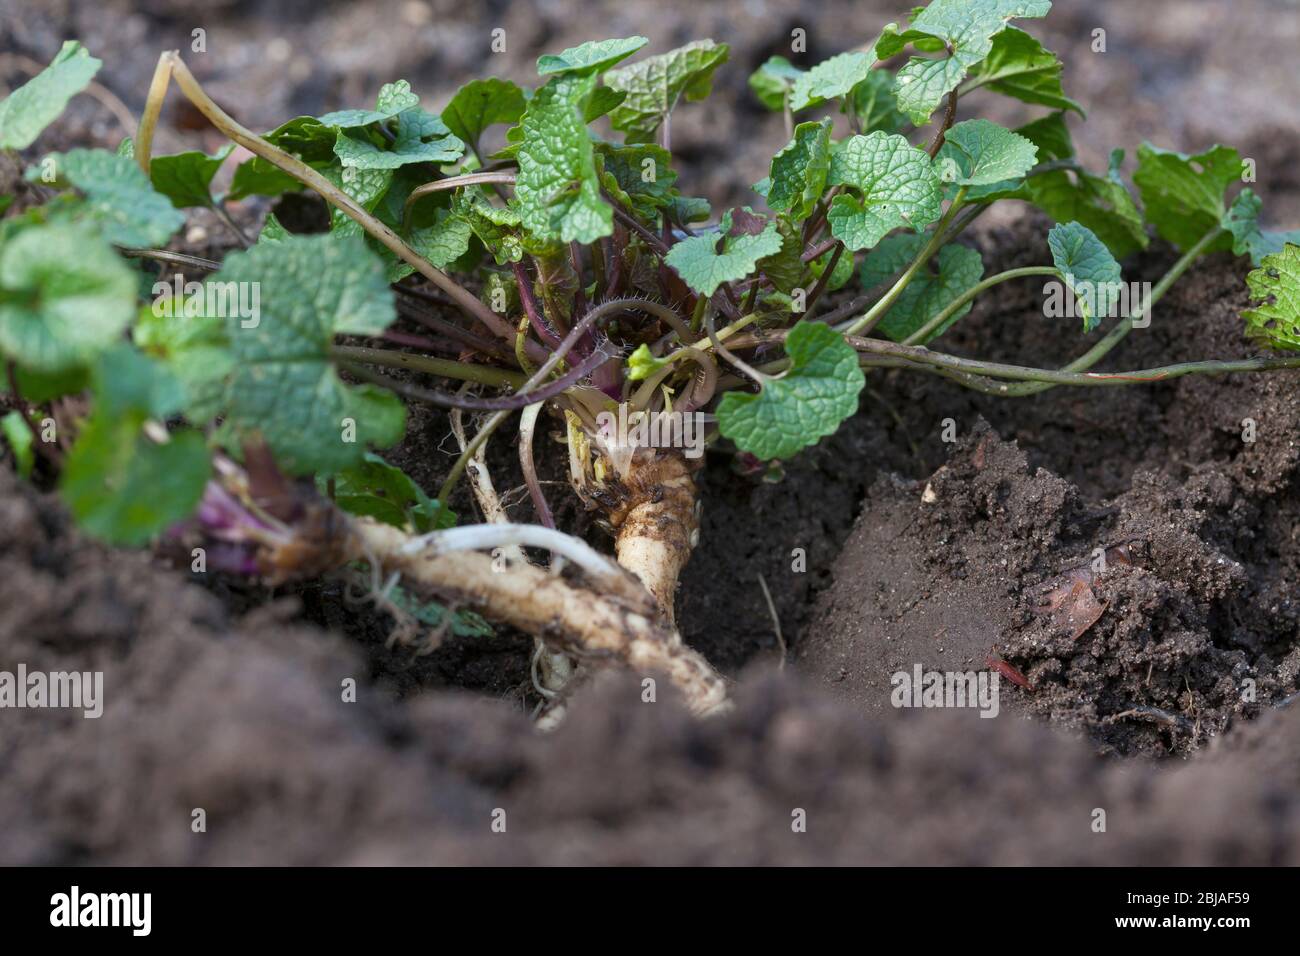 Senape all'aglio, aglio, Jack-by-the-Hedge (Alliaria petiolata), foglie giovani, raccolte prima della fioritura, in Germania Foto Stock